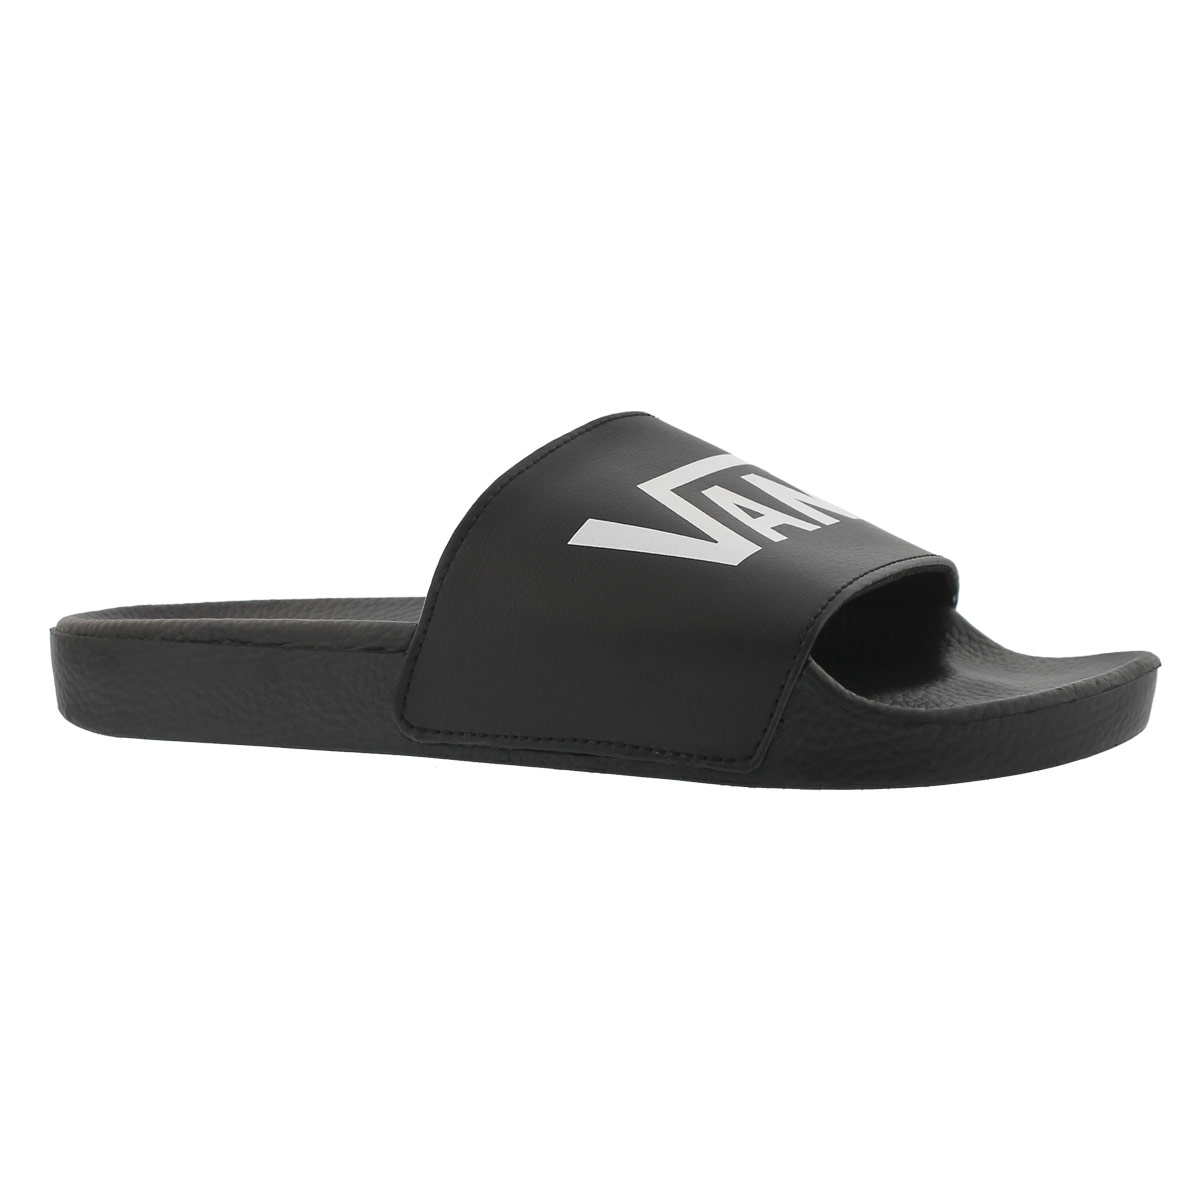 Vans Men's Slide One Sandal - Black | SoftMoc.com